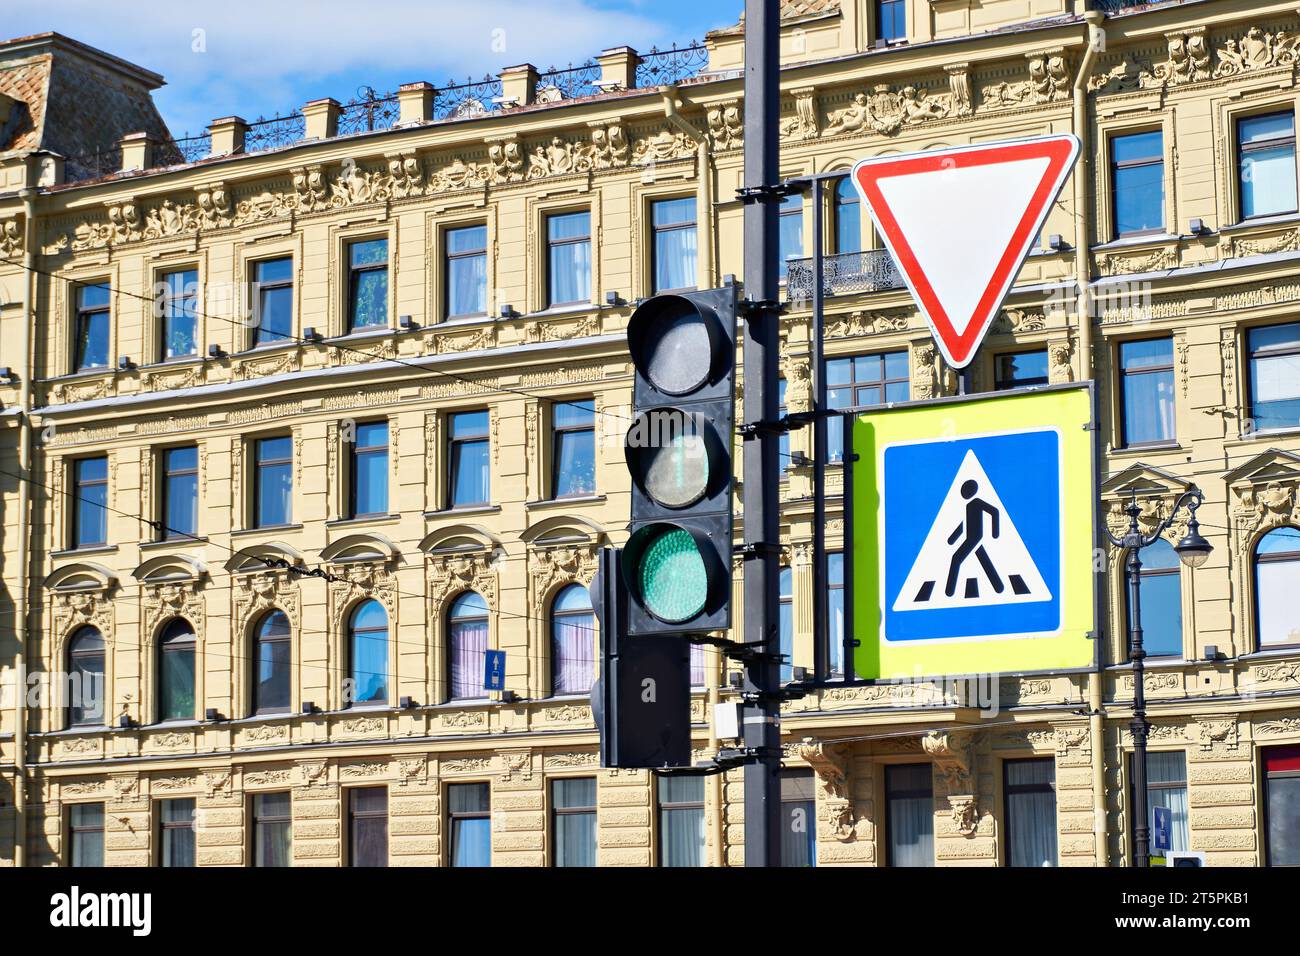 Semaforo e segnali stradali sullo sfondo di un vecchio edificio cittadino Foto Stock